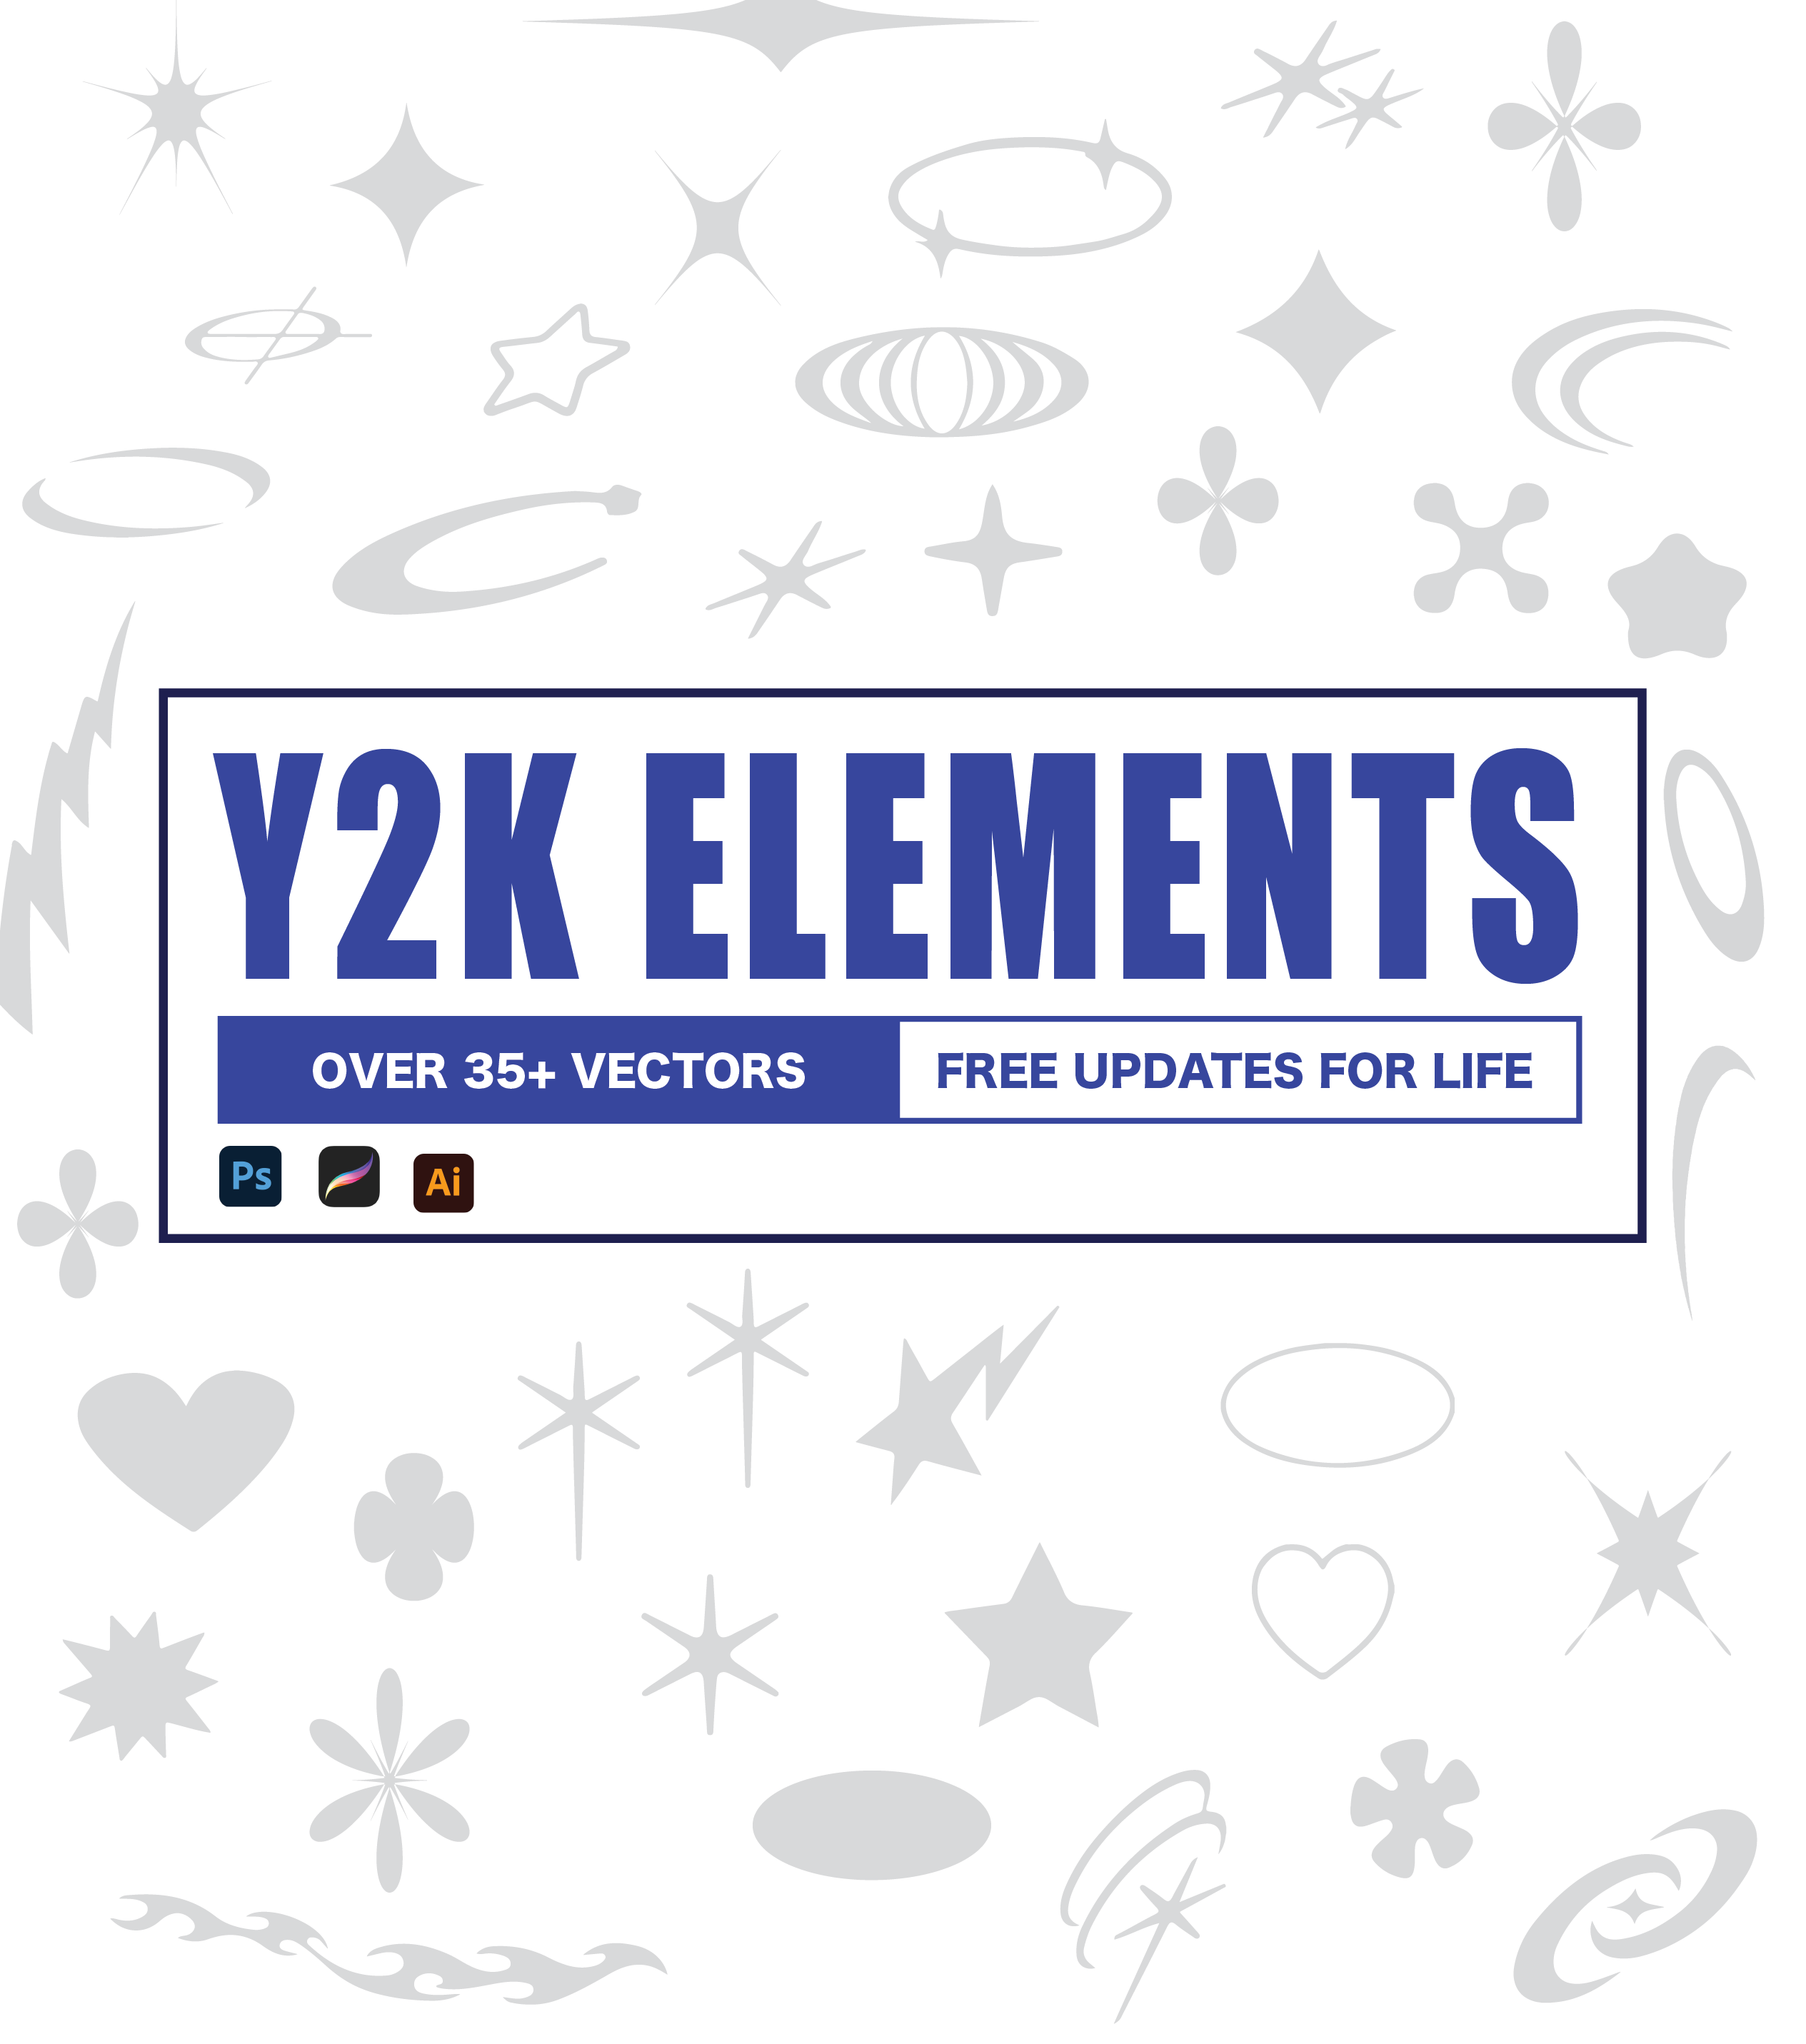 Y2K Elements